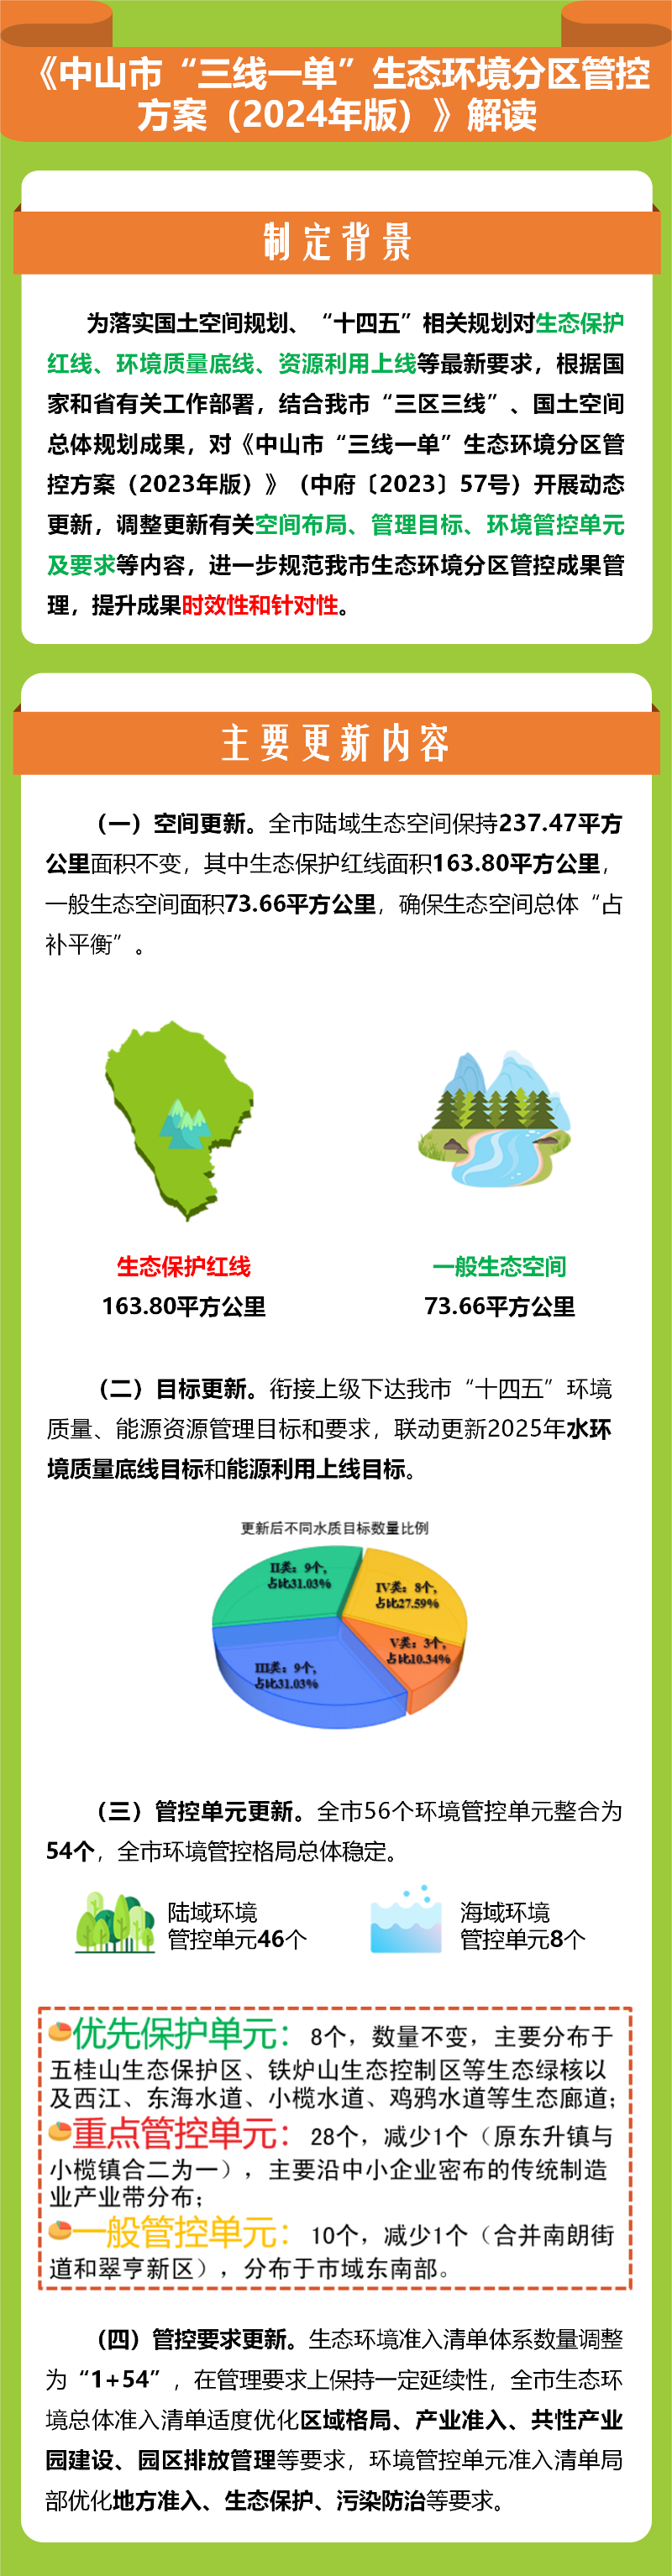 《中山市“三线一单”生态环境分区管控方案（2024年版）》图文解读.png